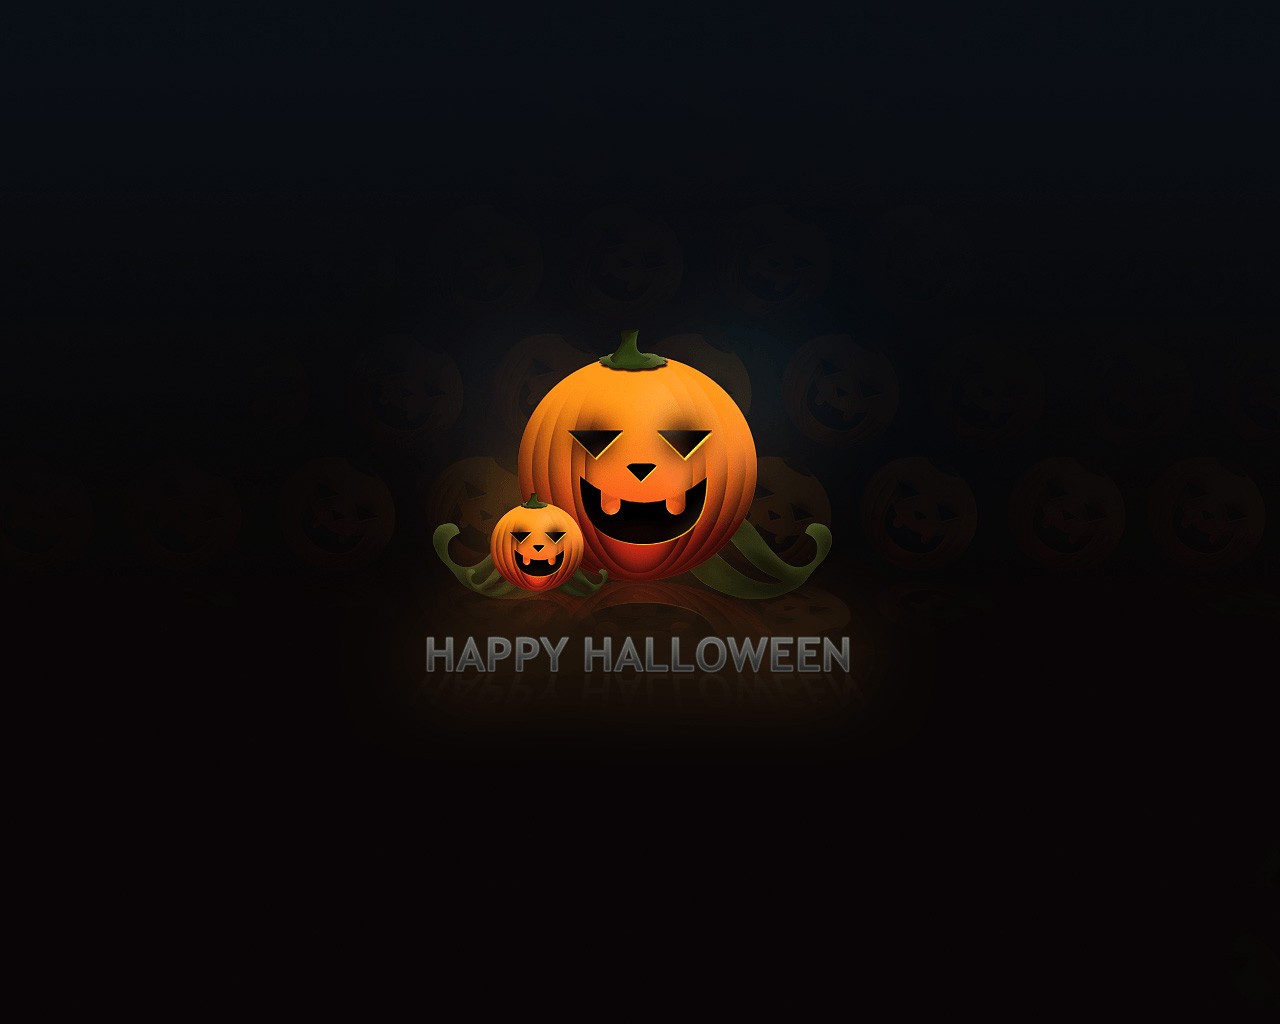 Happy Halloween Wallpaper HD - KoLPaPer - Awesome Free HD Wallpapers